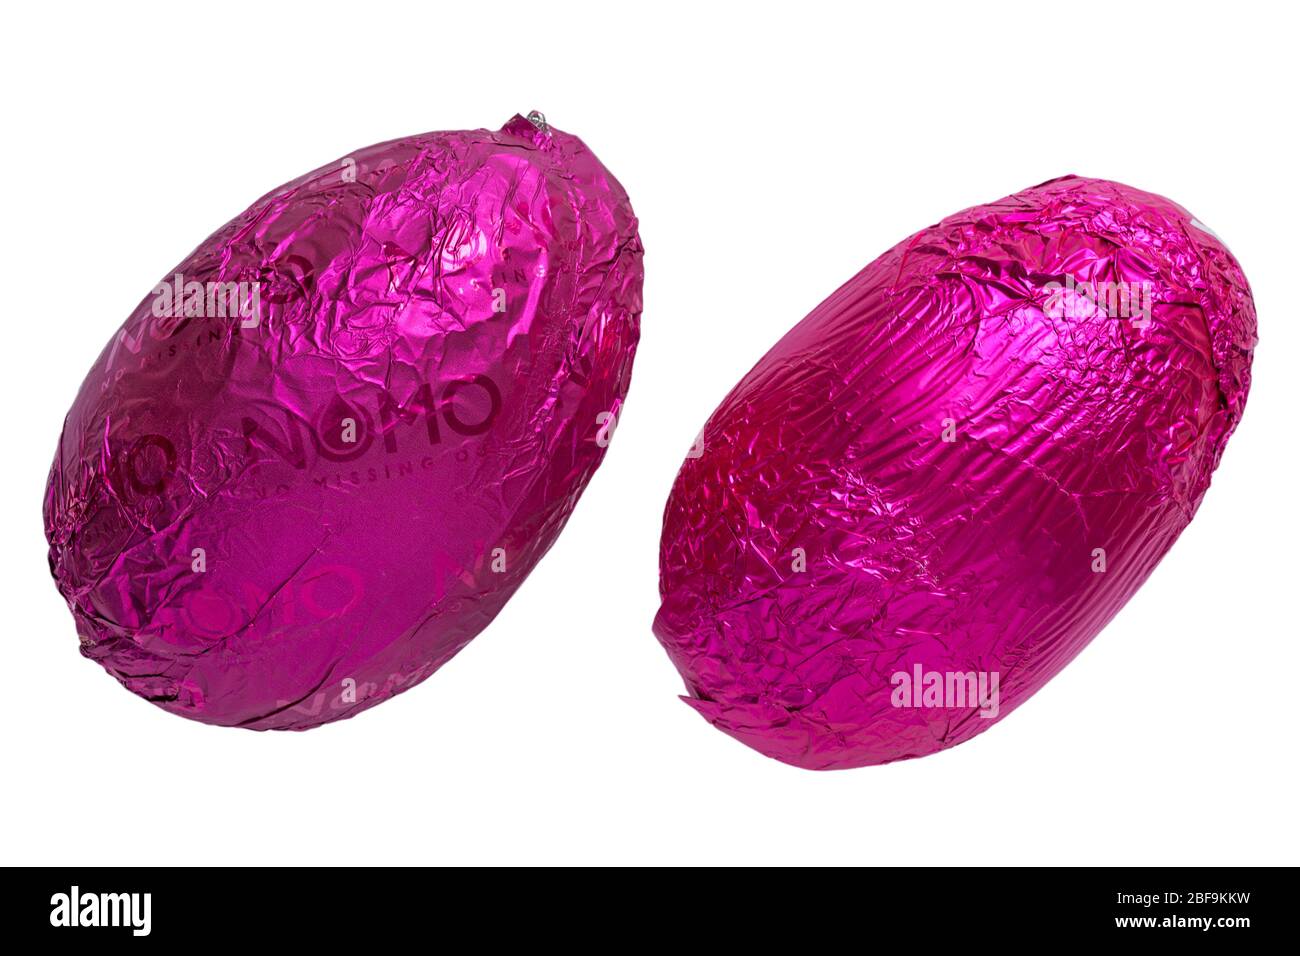 Lila und rosa Folie verpackt Ostereier - Nomo no misend out Vegan & Free From Fruit & Crunch Egg auf der linken Seite Stockfoto